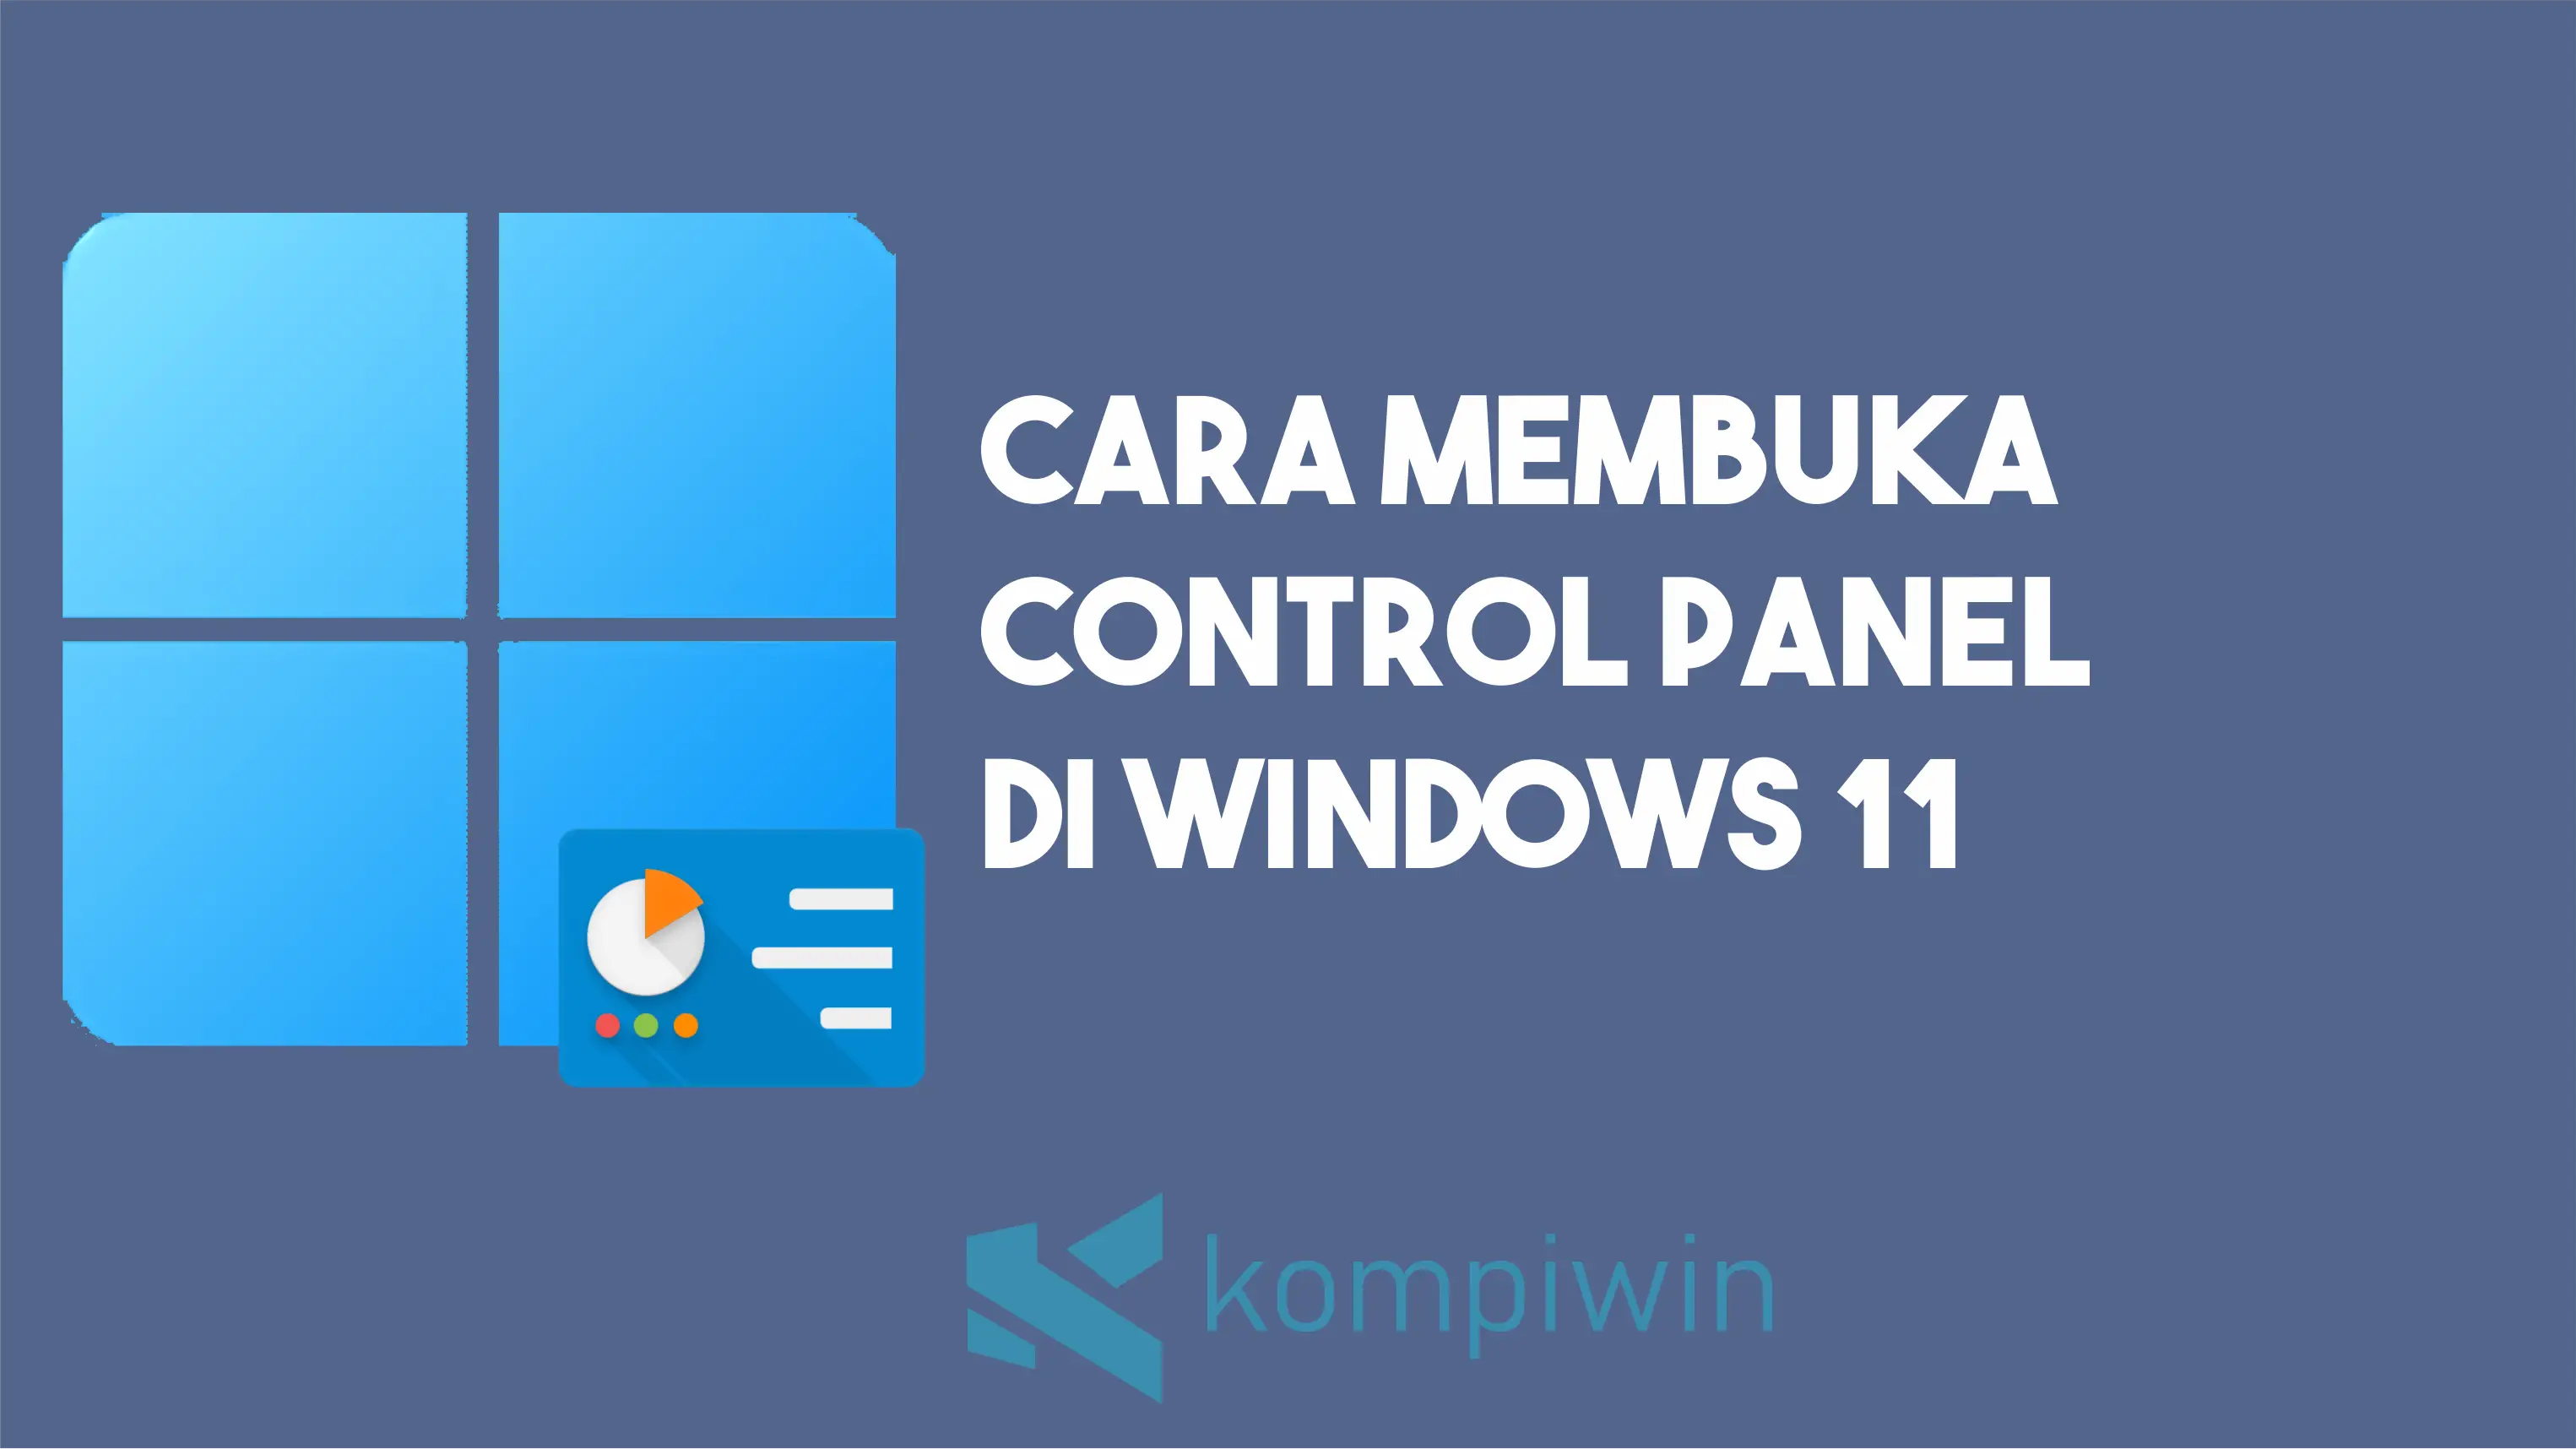 Cara Membuka Control Panel Di Windows 11